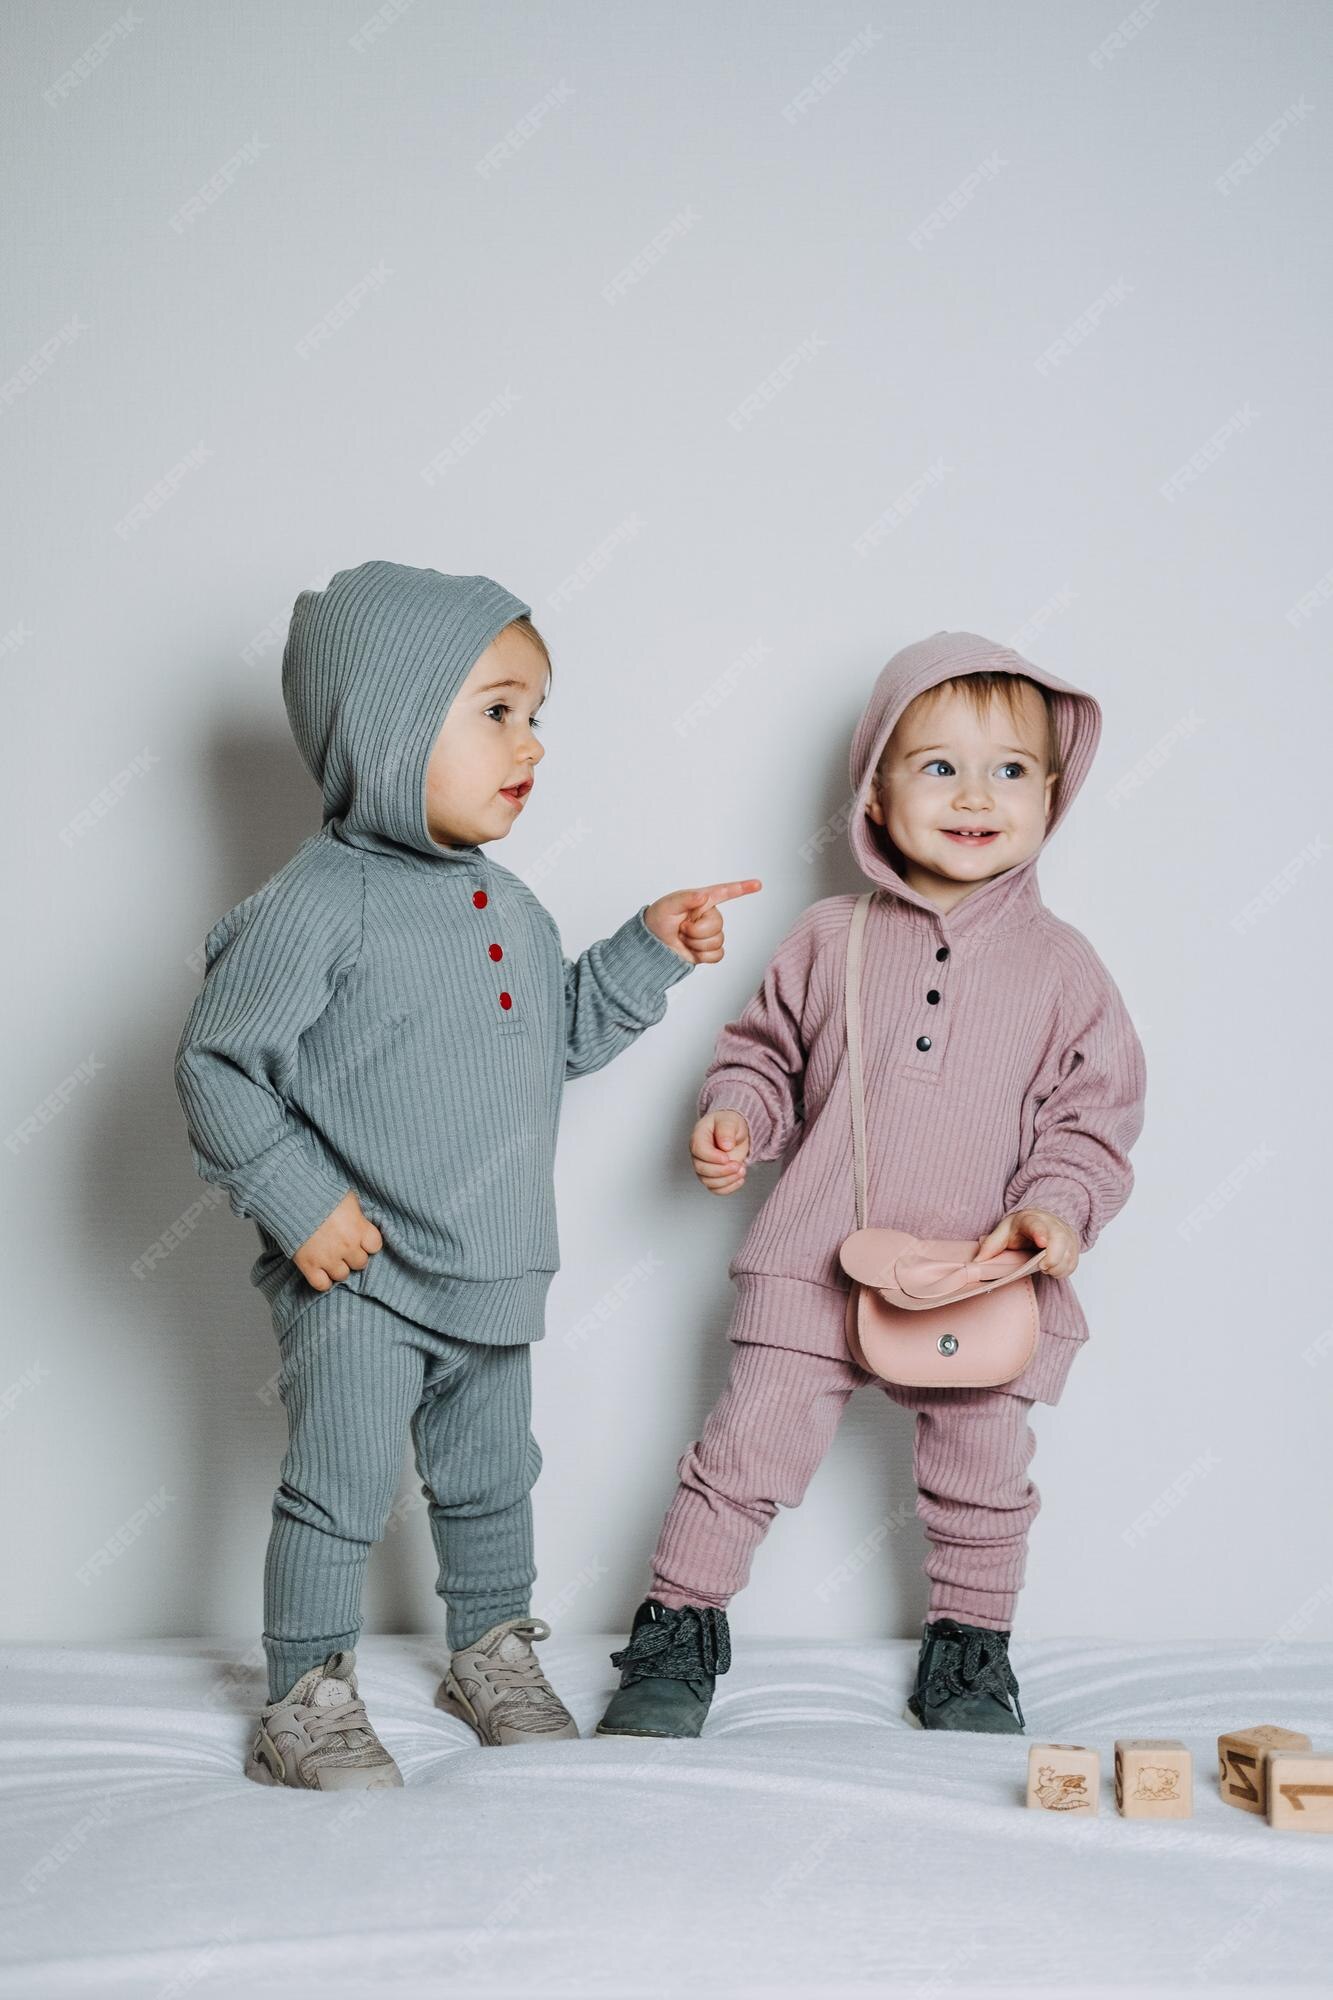 Ropa unisex de moda para bebés, ropa neutral de género para bebés, dos lindas niñas o en conjunto de algodón | Foto Premium